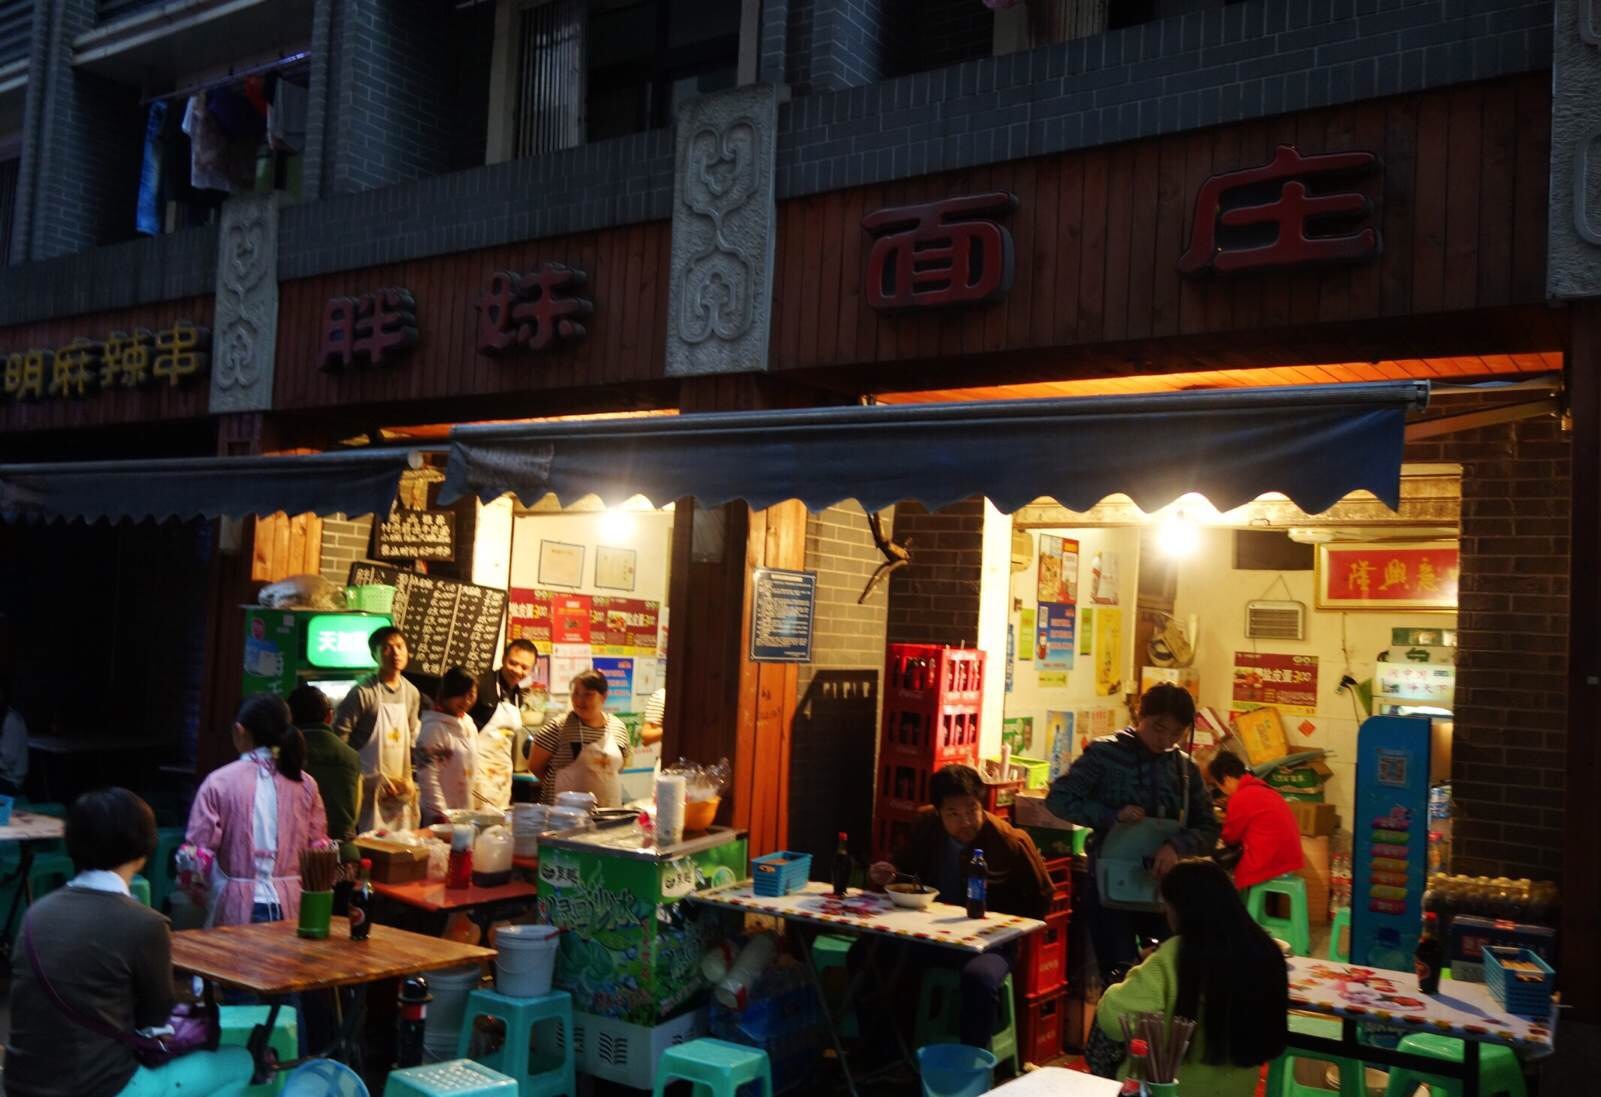 重庆美食：味蕾的舞蹈  来到重庆  不能不说到吃  这里是吃货的天堂  重庆小面 豌杂面  重庆火锅